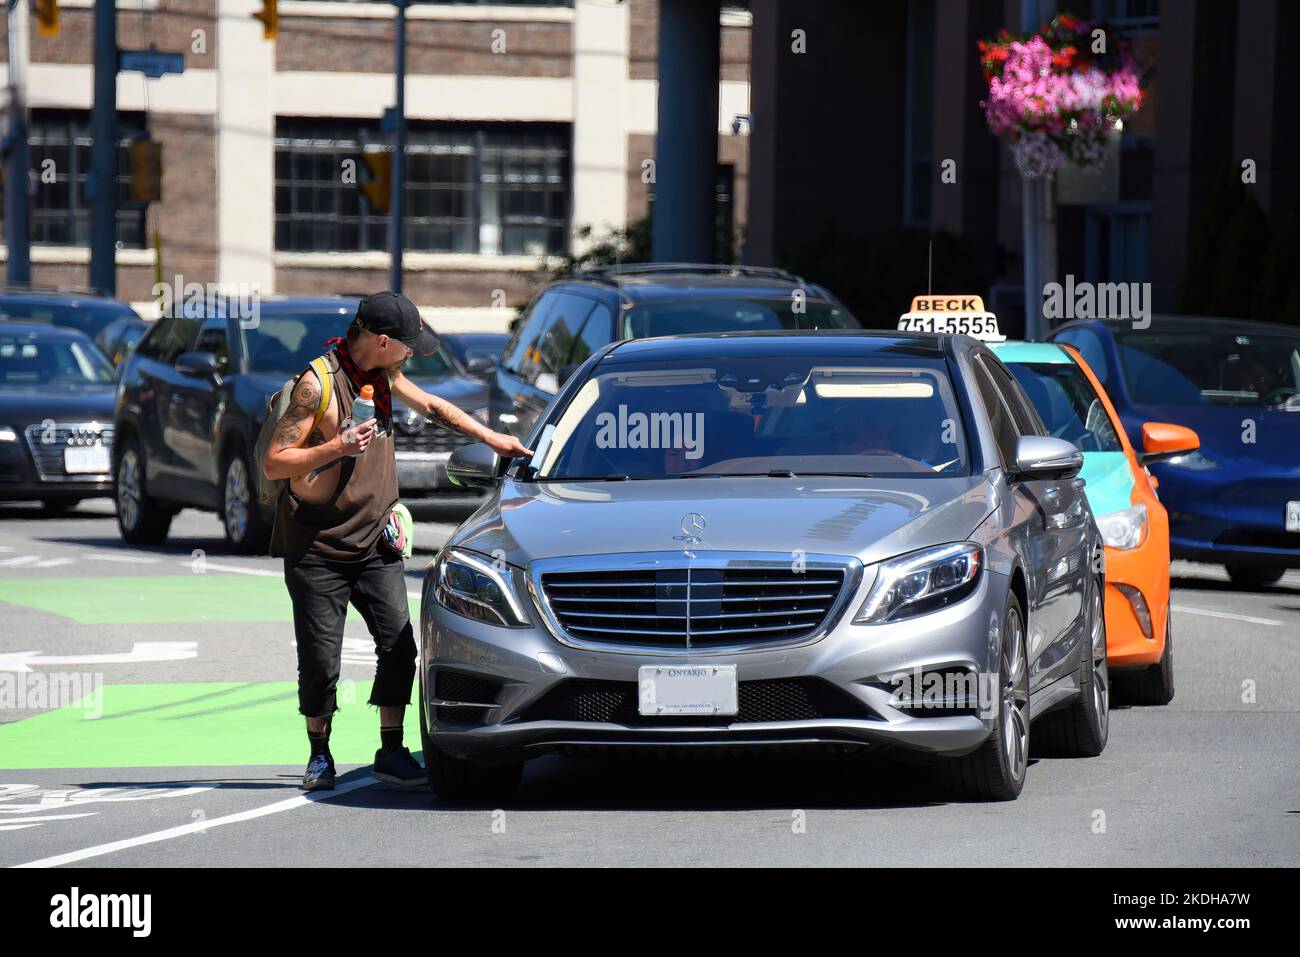 Toronto, Canada - 12 août 2022: Squegee homme essuie le pare-brise de Mercedes-Benz dans la circulation. Banque D'Images